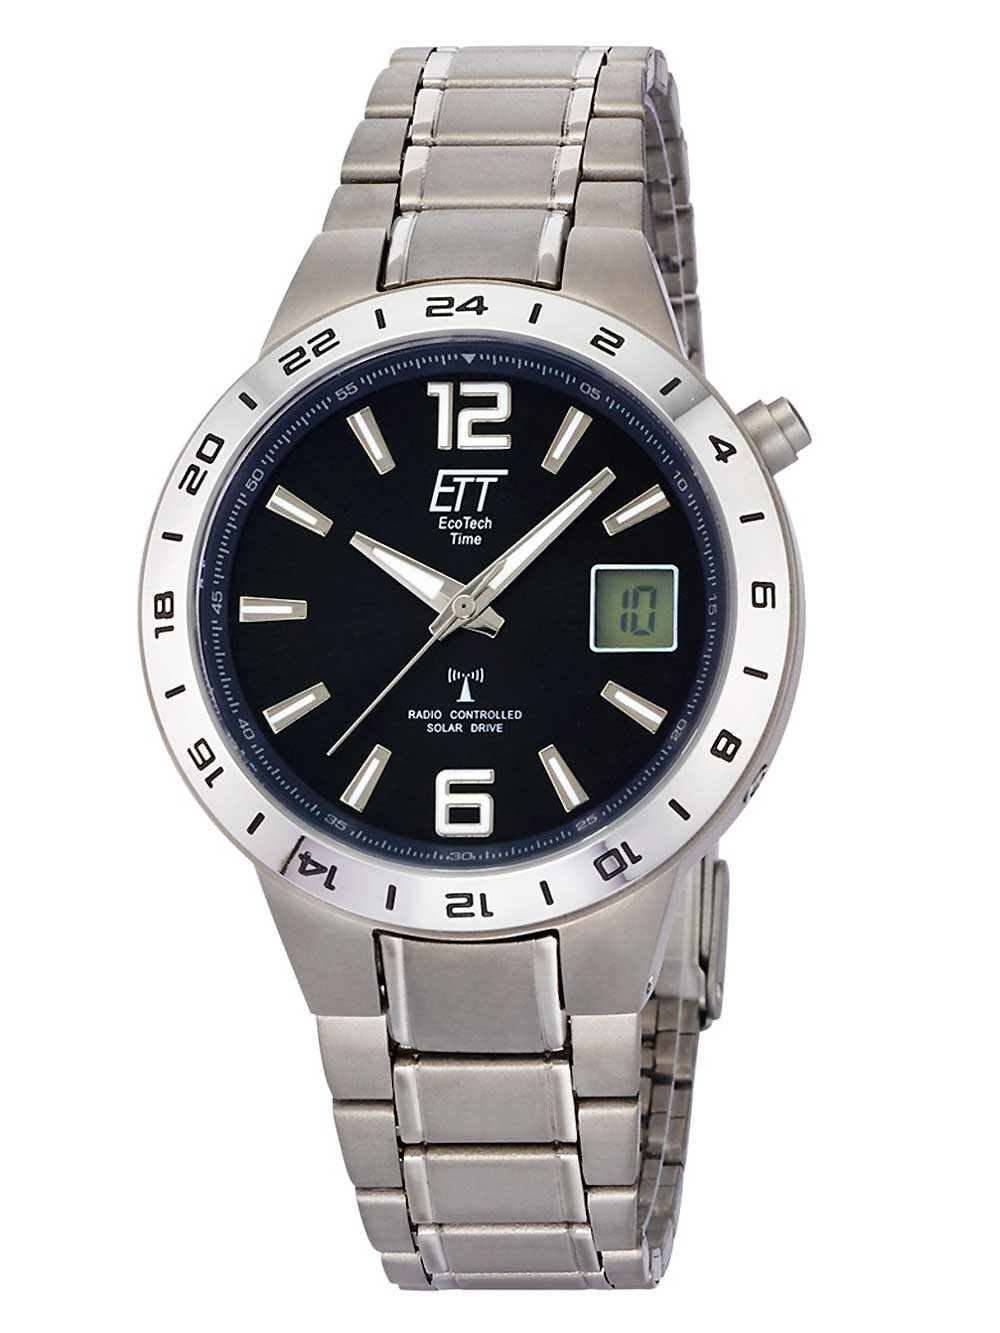 Мужские наручные часы с серебряным браслетом ETT EGT-11411-41M mens solar titanium radio controlled watch 40mm 5ATM